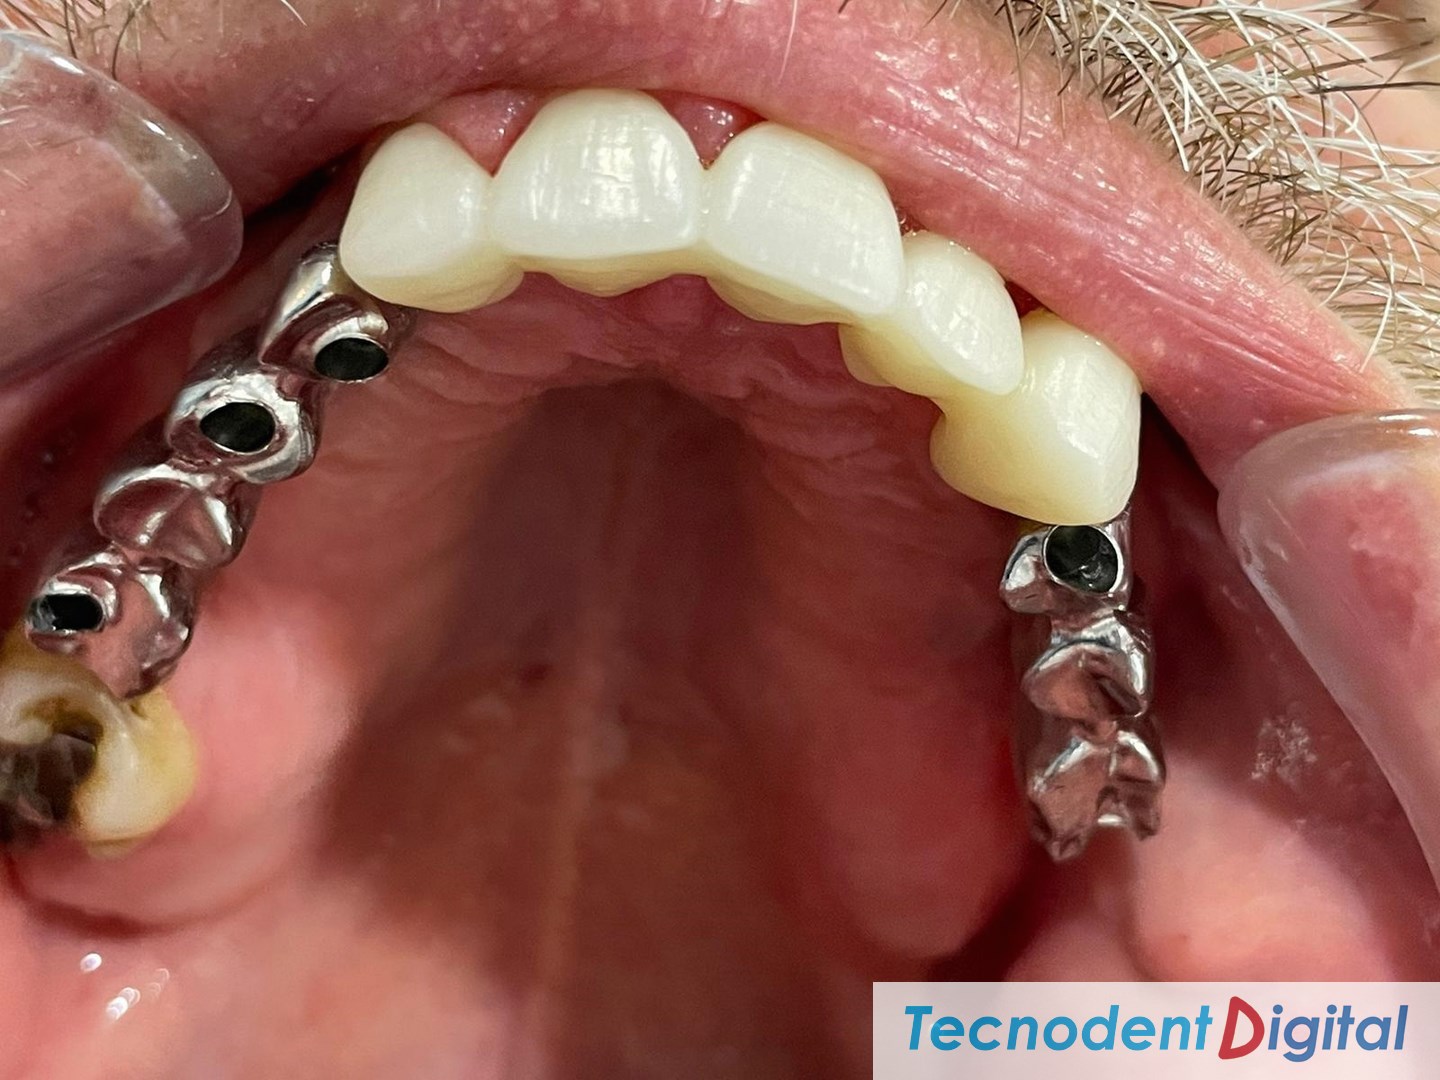 Coronas-de-zirconio-implantes-metal-ceramica-Rehabilitacion-oral-Laboratorio-Gandia